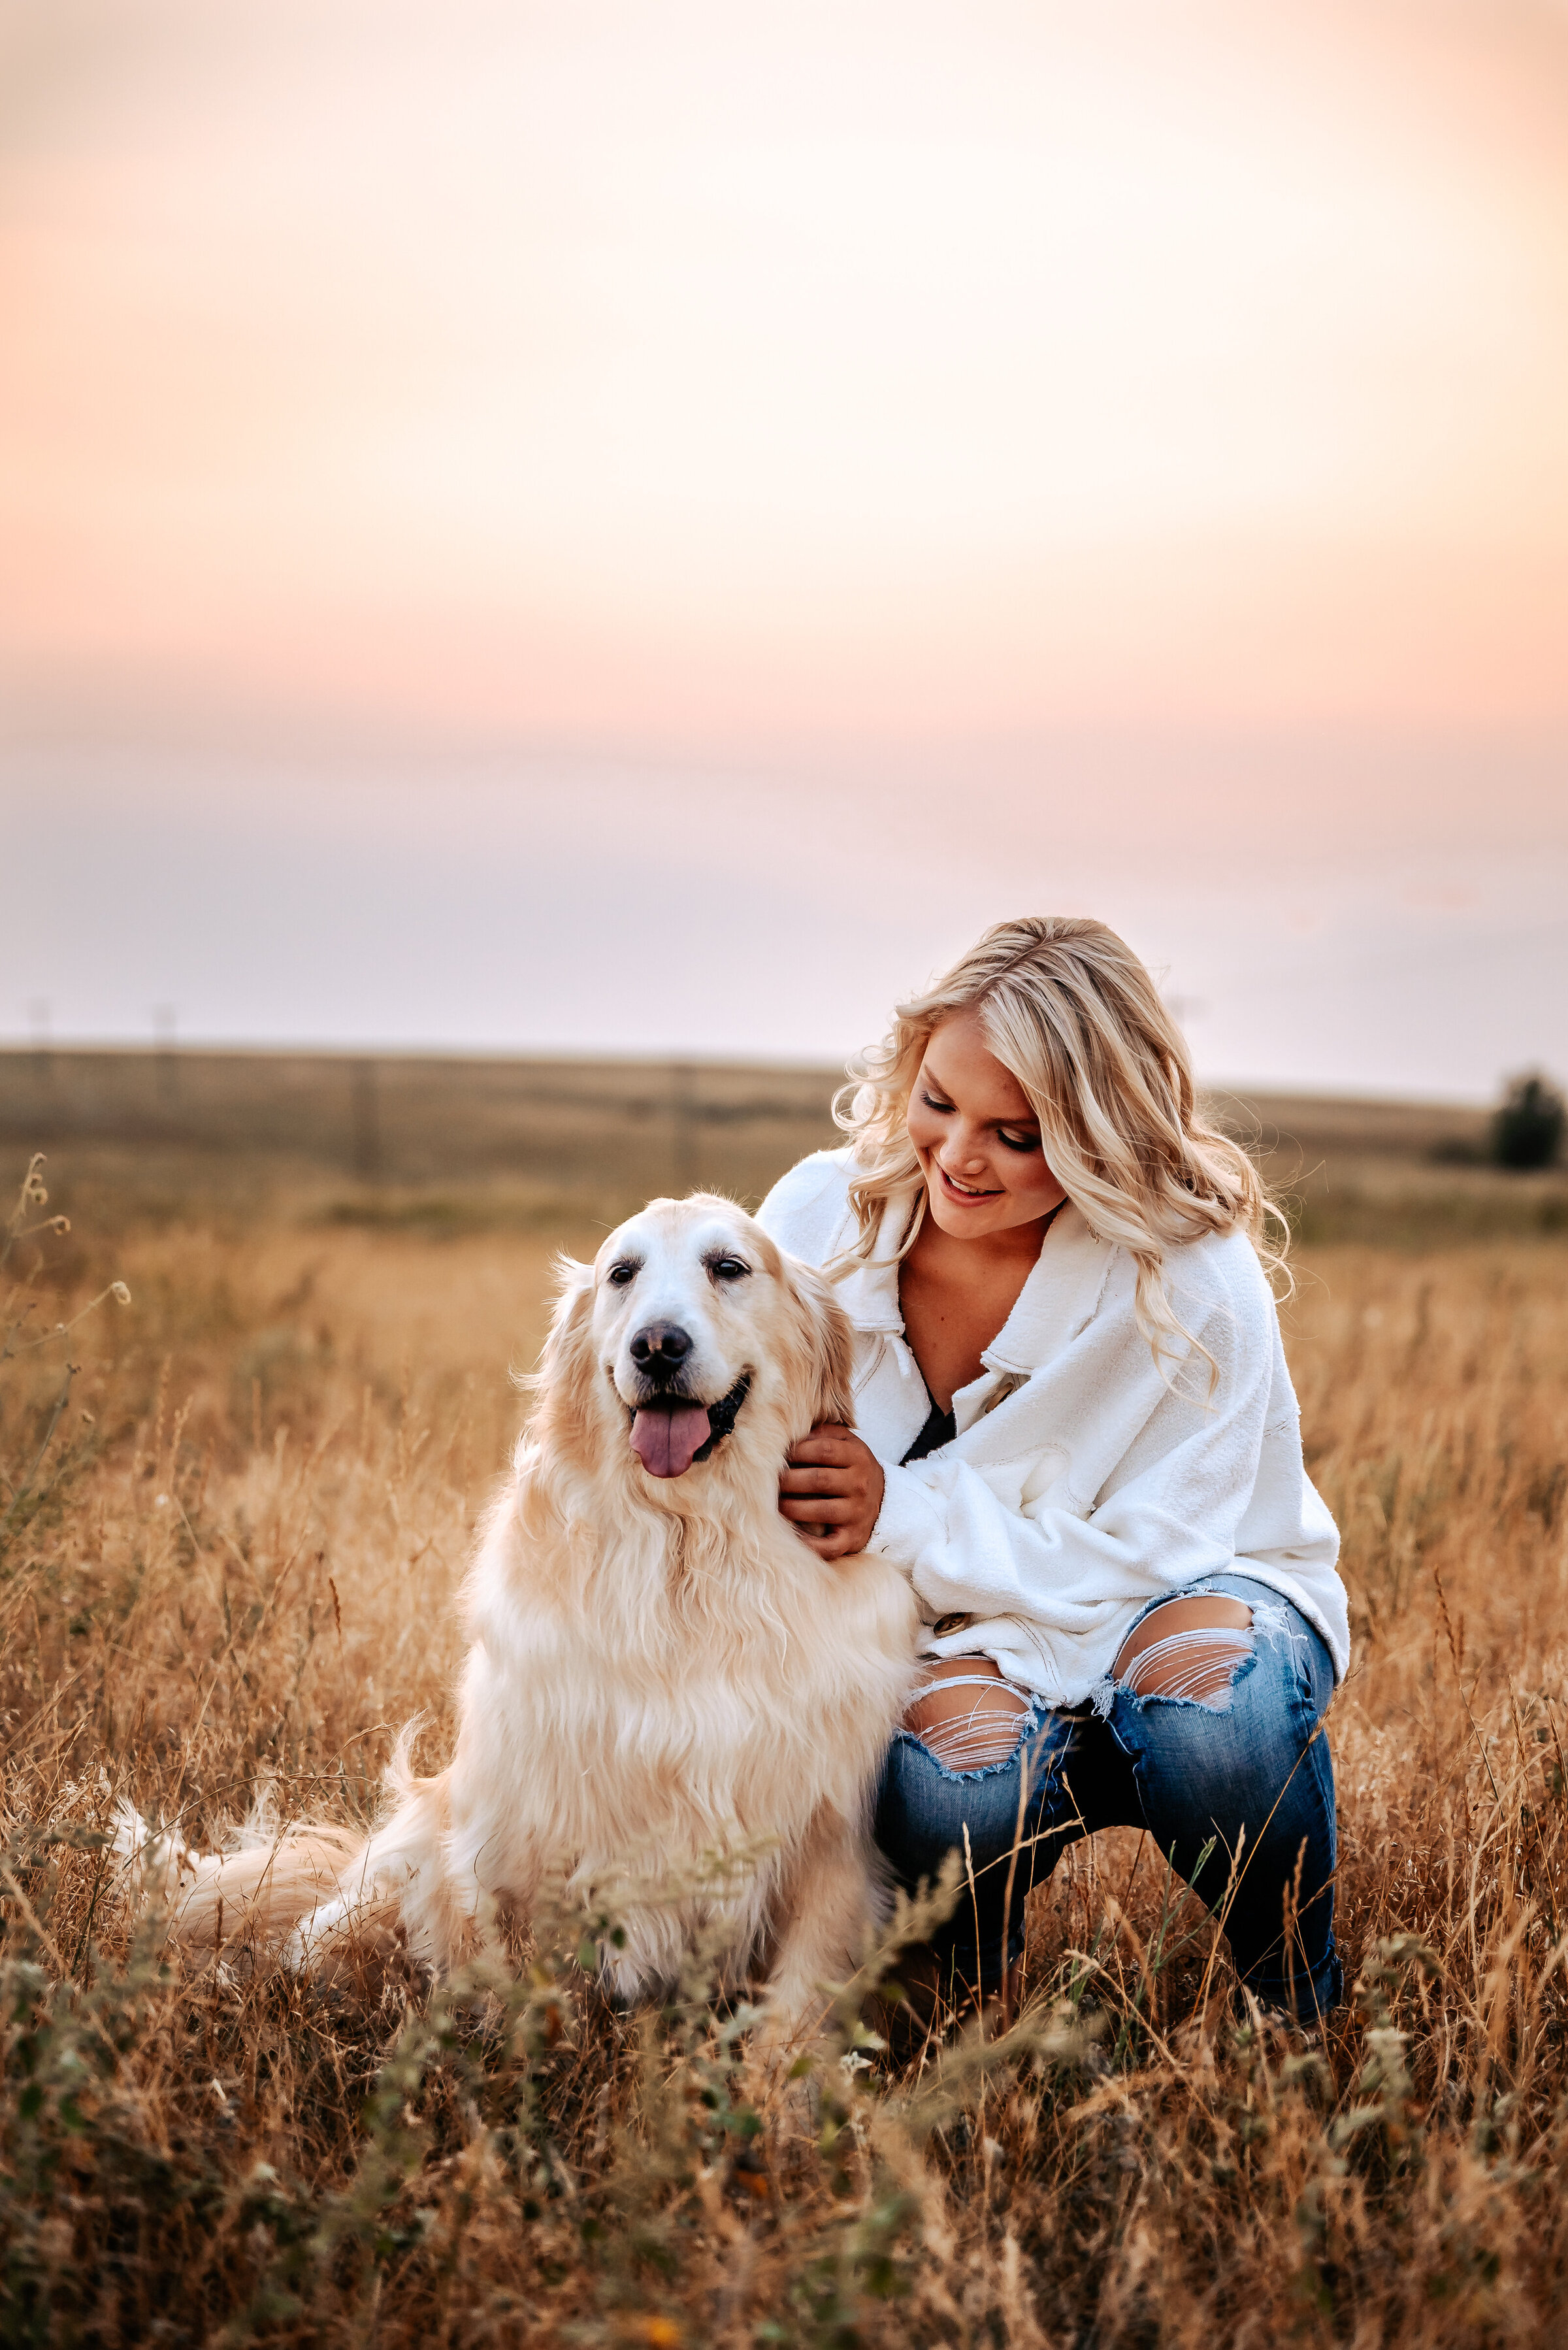 Senior girl pets her golden retriever dog in cattle field